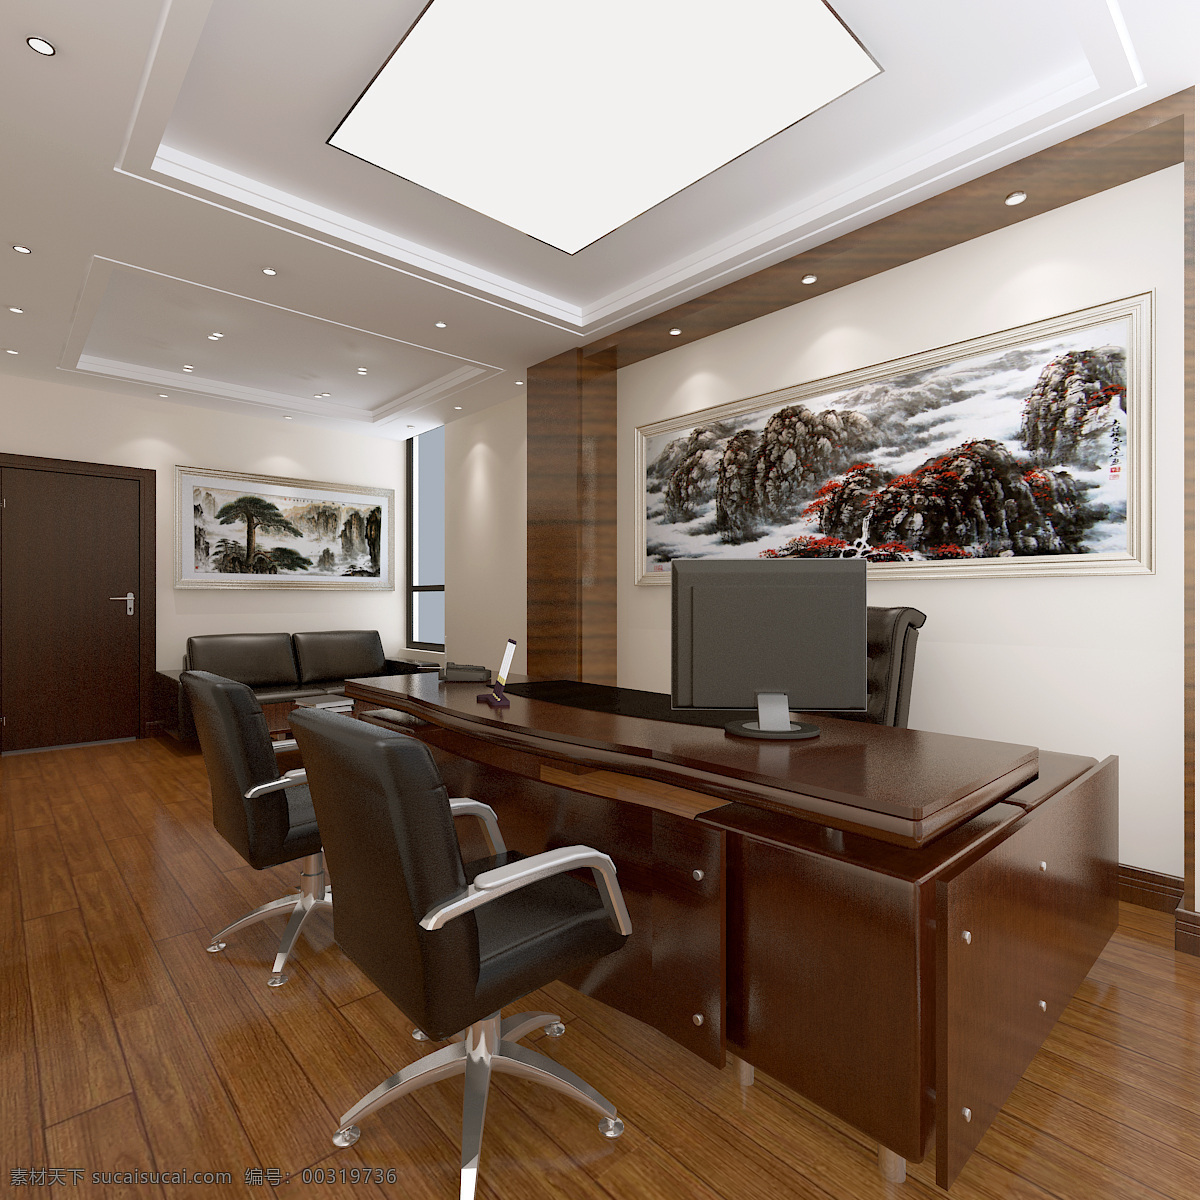 总经理办公室 办公室 经理室 老总办公室 效果图 室内设计 办公空间 办公 3d设计 3d作品